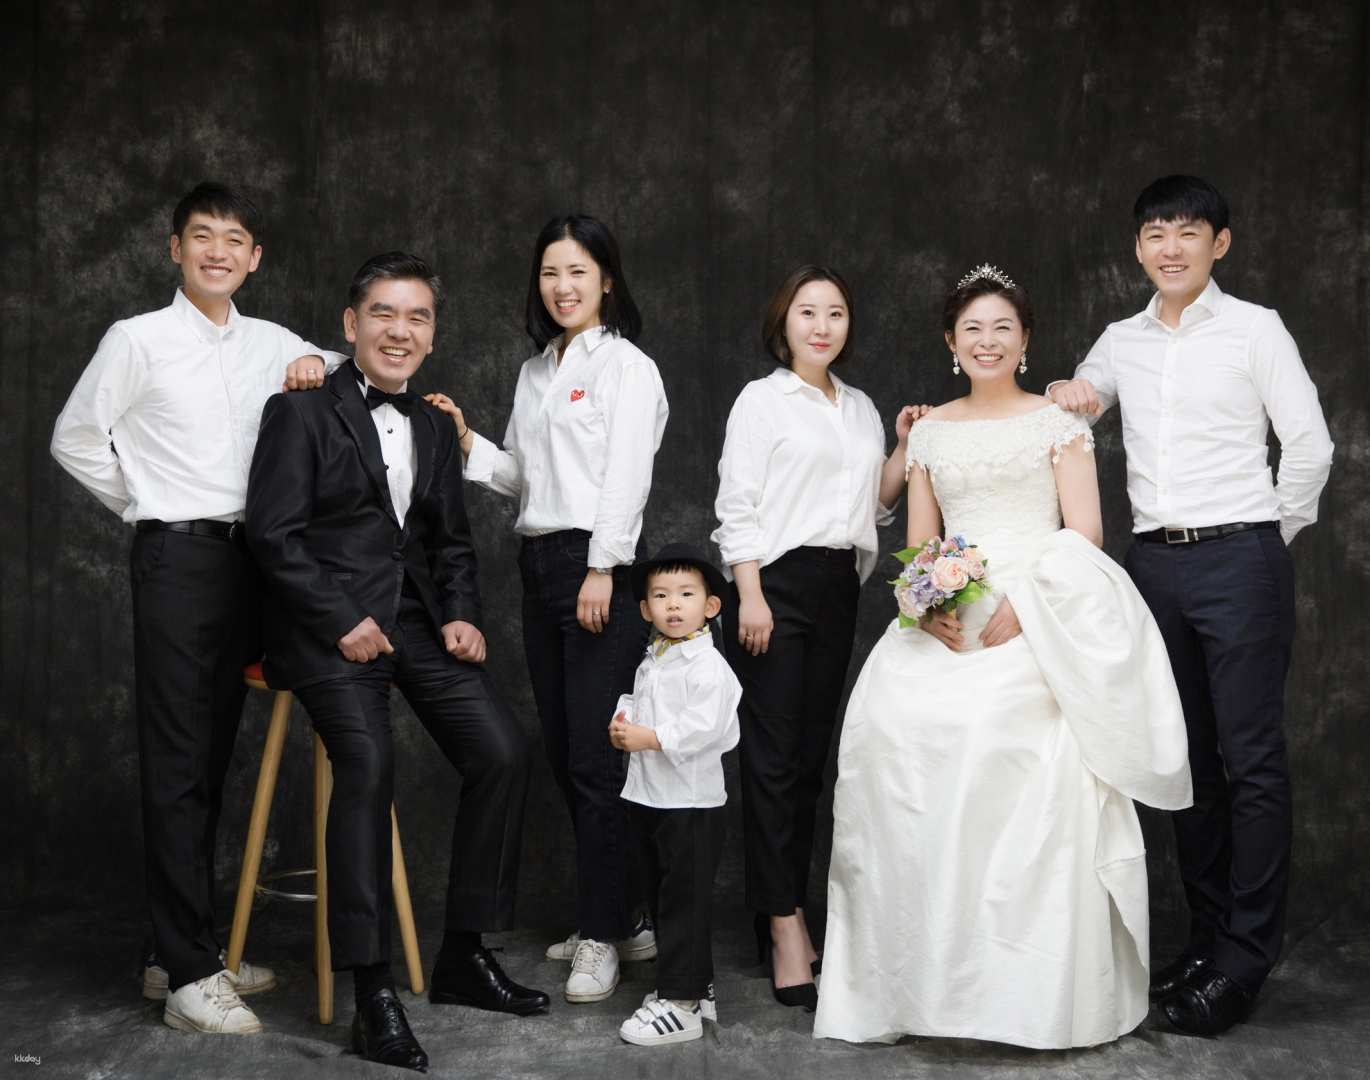 韓國-首爾吉安得Z-and專業攝影| 全家福紀念婚紗攝影體驗| 提供中文翻譯貼身服務